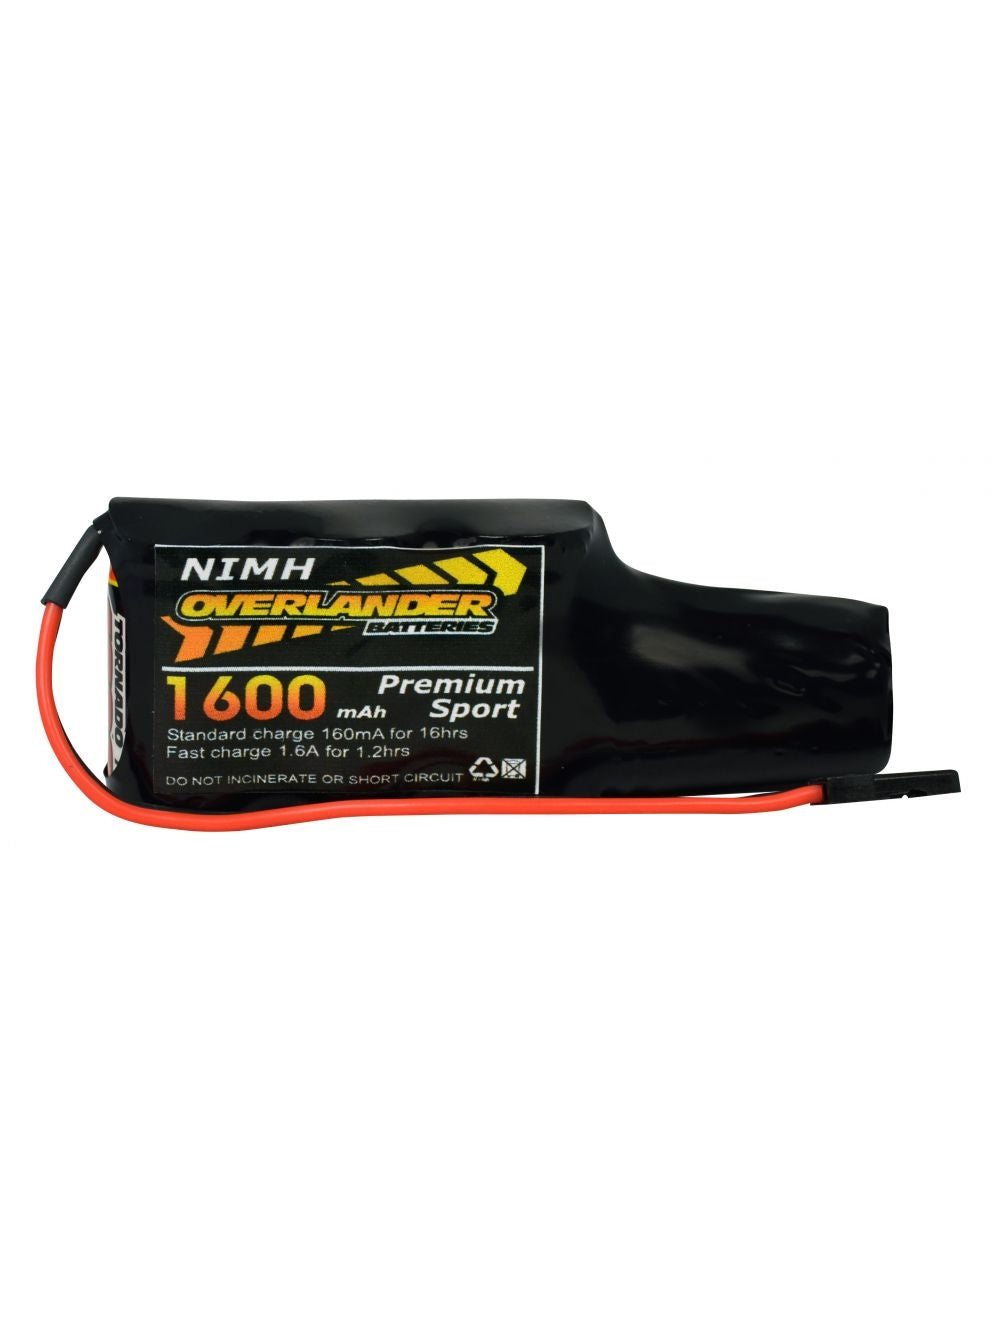 Overlander Nimh Battery Pack 2/3 AF 1600mah 4.8v Receiver Config (4+1) Premium Sport 3297